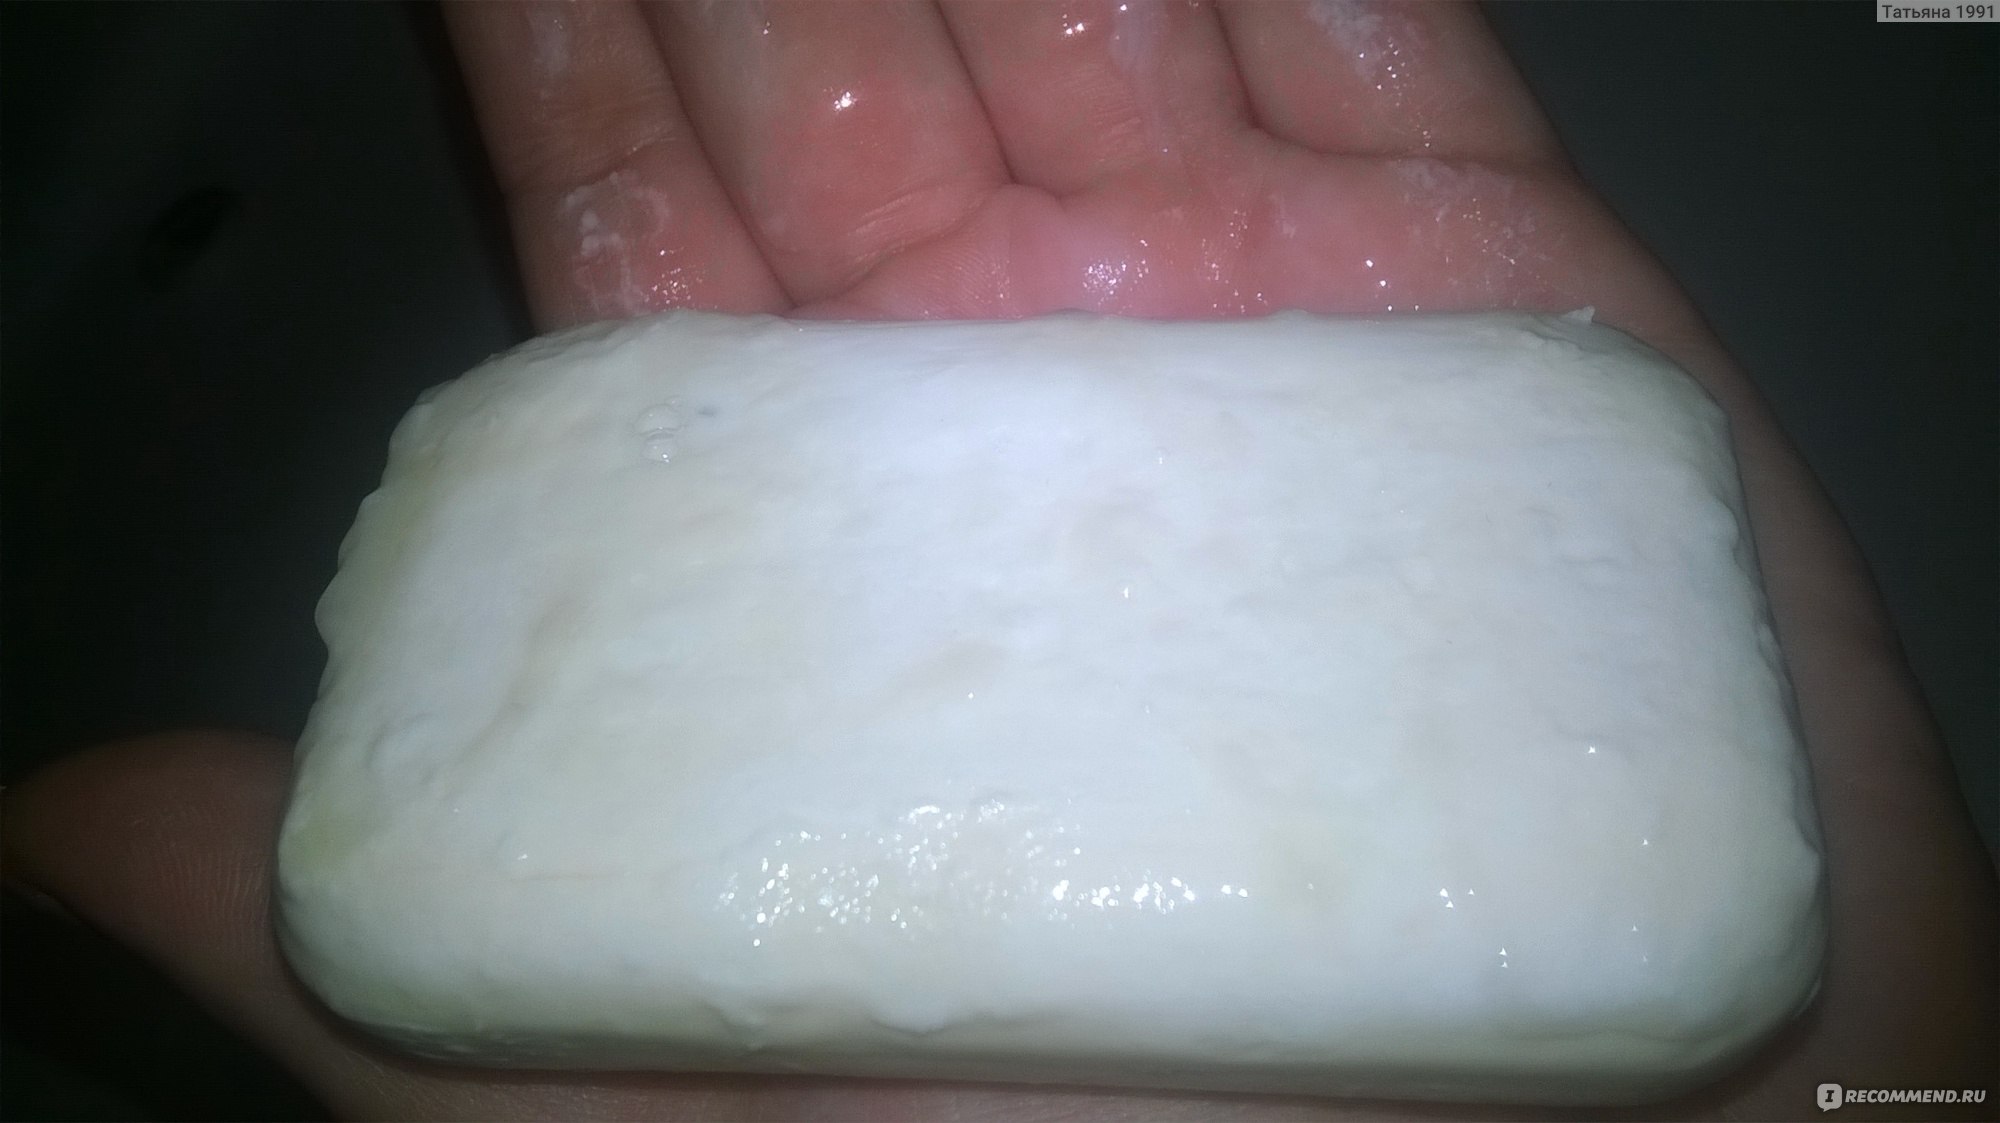 Мыло для рук и тела Faberlic beauty care французский десерт фото